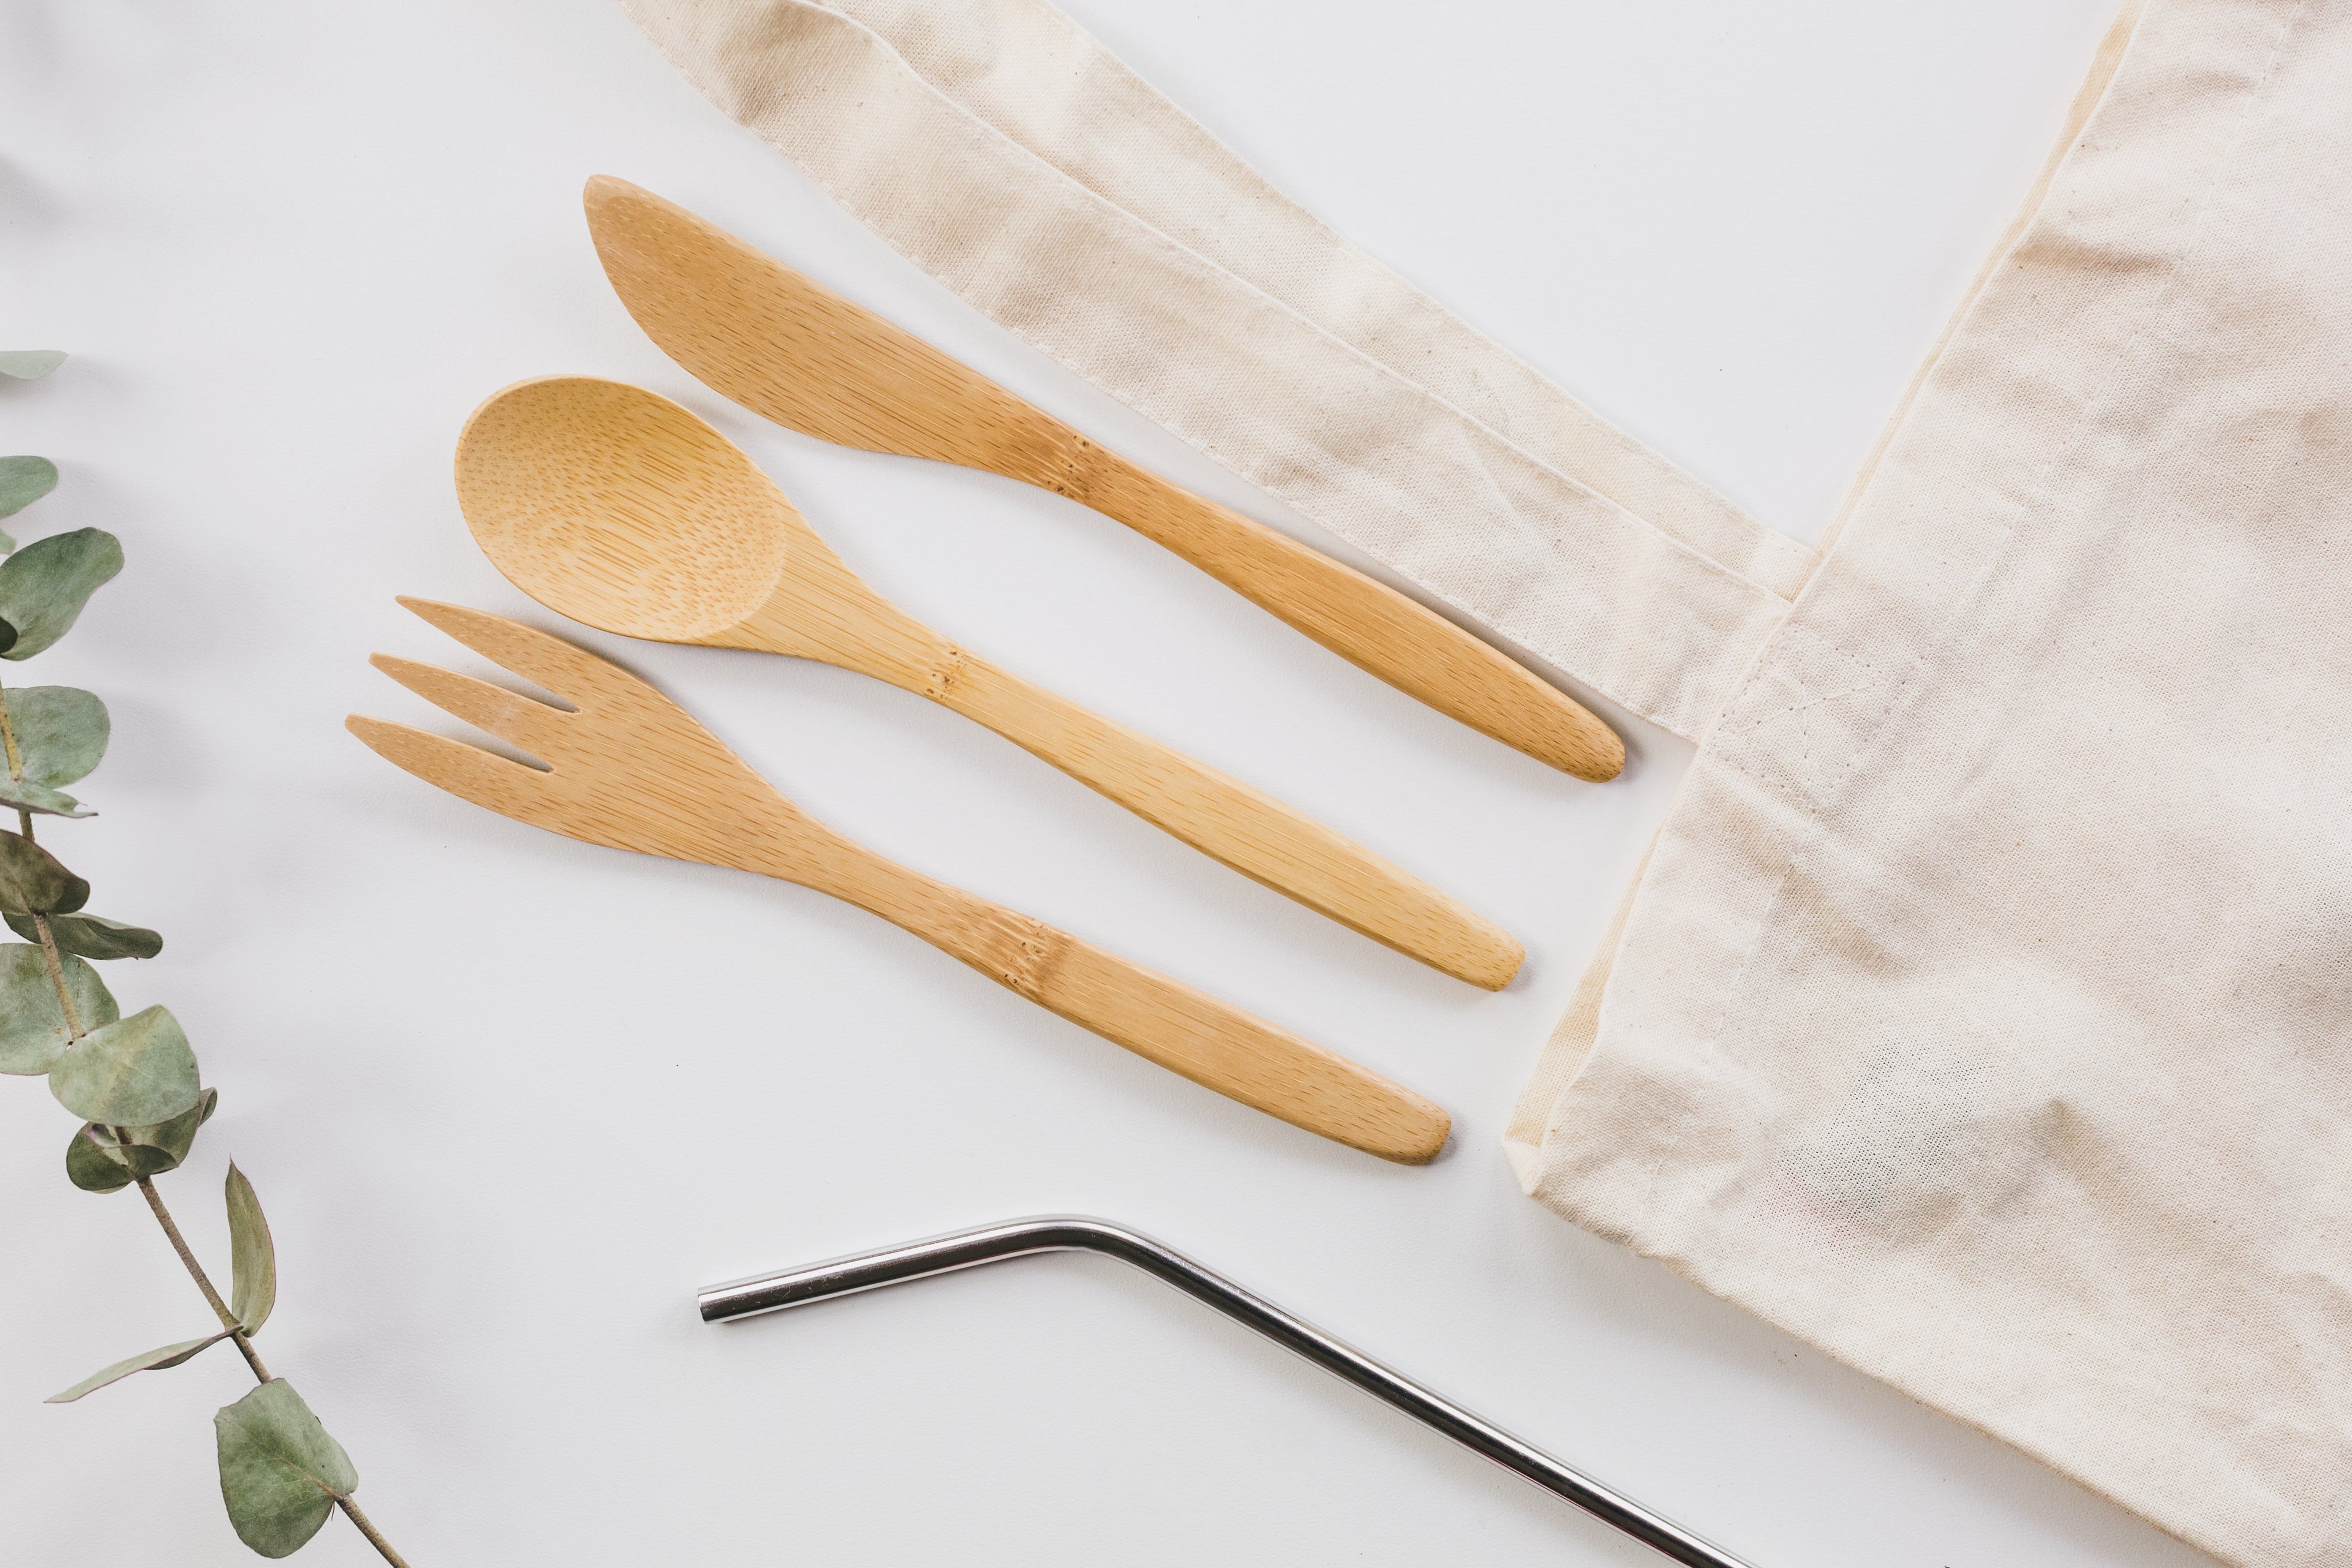 Reusable bamboo cutlery set for zero waste